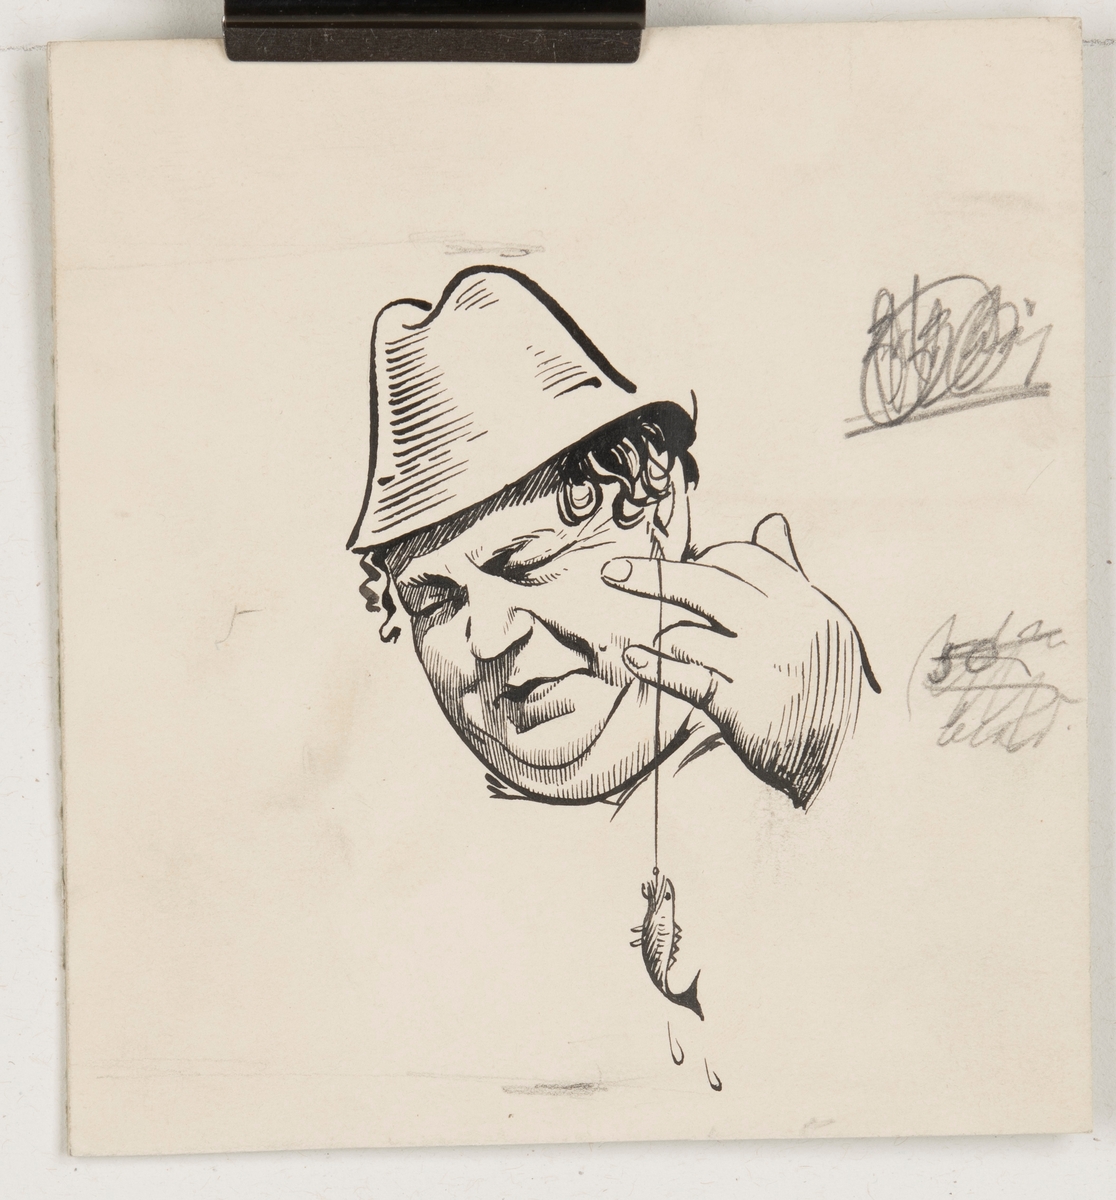 Illustration till filmaffisch, "Baldevins bröllop".

Illustrationen föreställer ett ansikte av en man som bär hatt. Mannen blundar samt håller upp en fisklina med en liten fisk hängades på kroken.